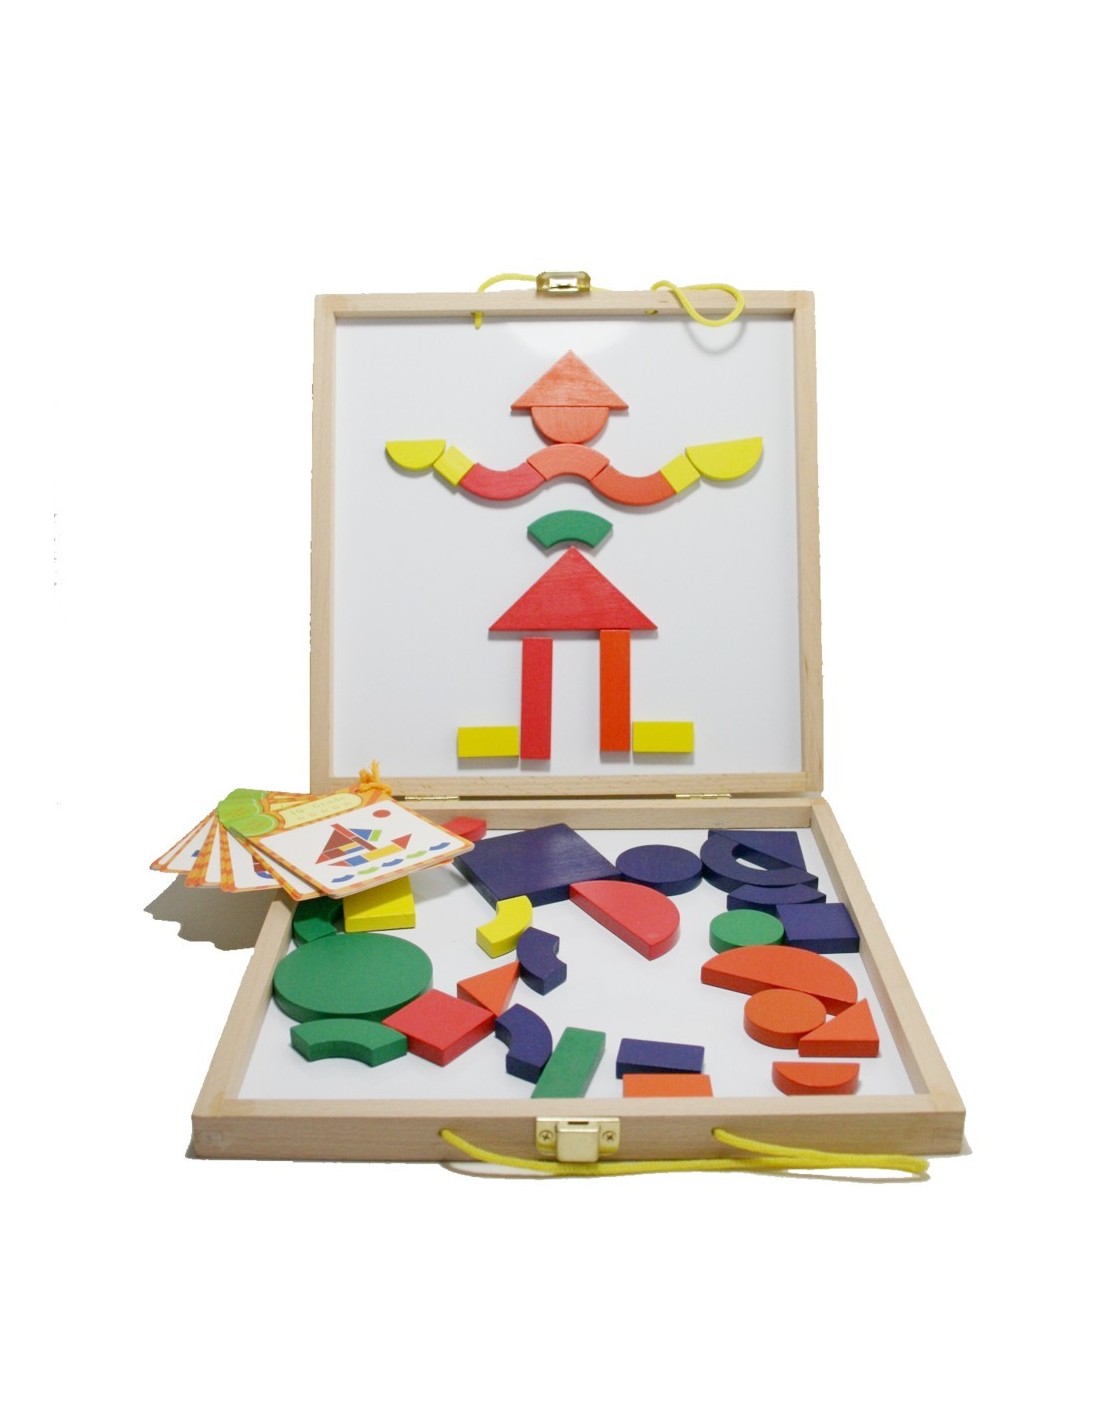 Joc de geometria amb maleta de fusta per a transport joc dhabilitat i creativitat infantil.